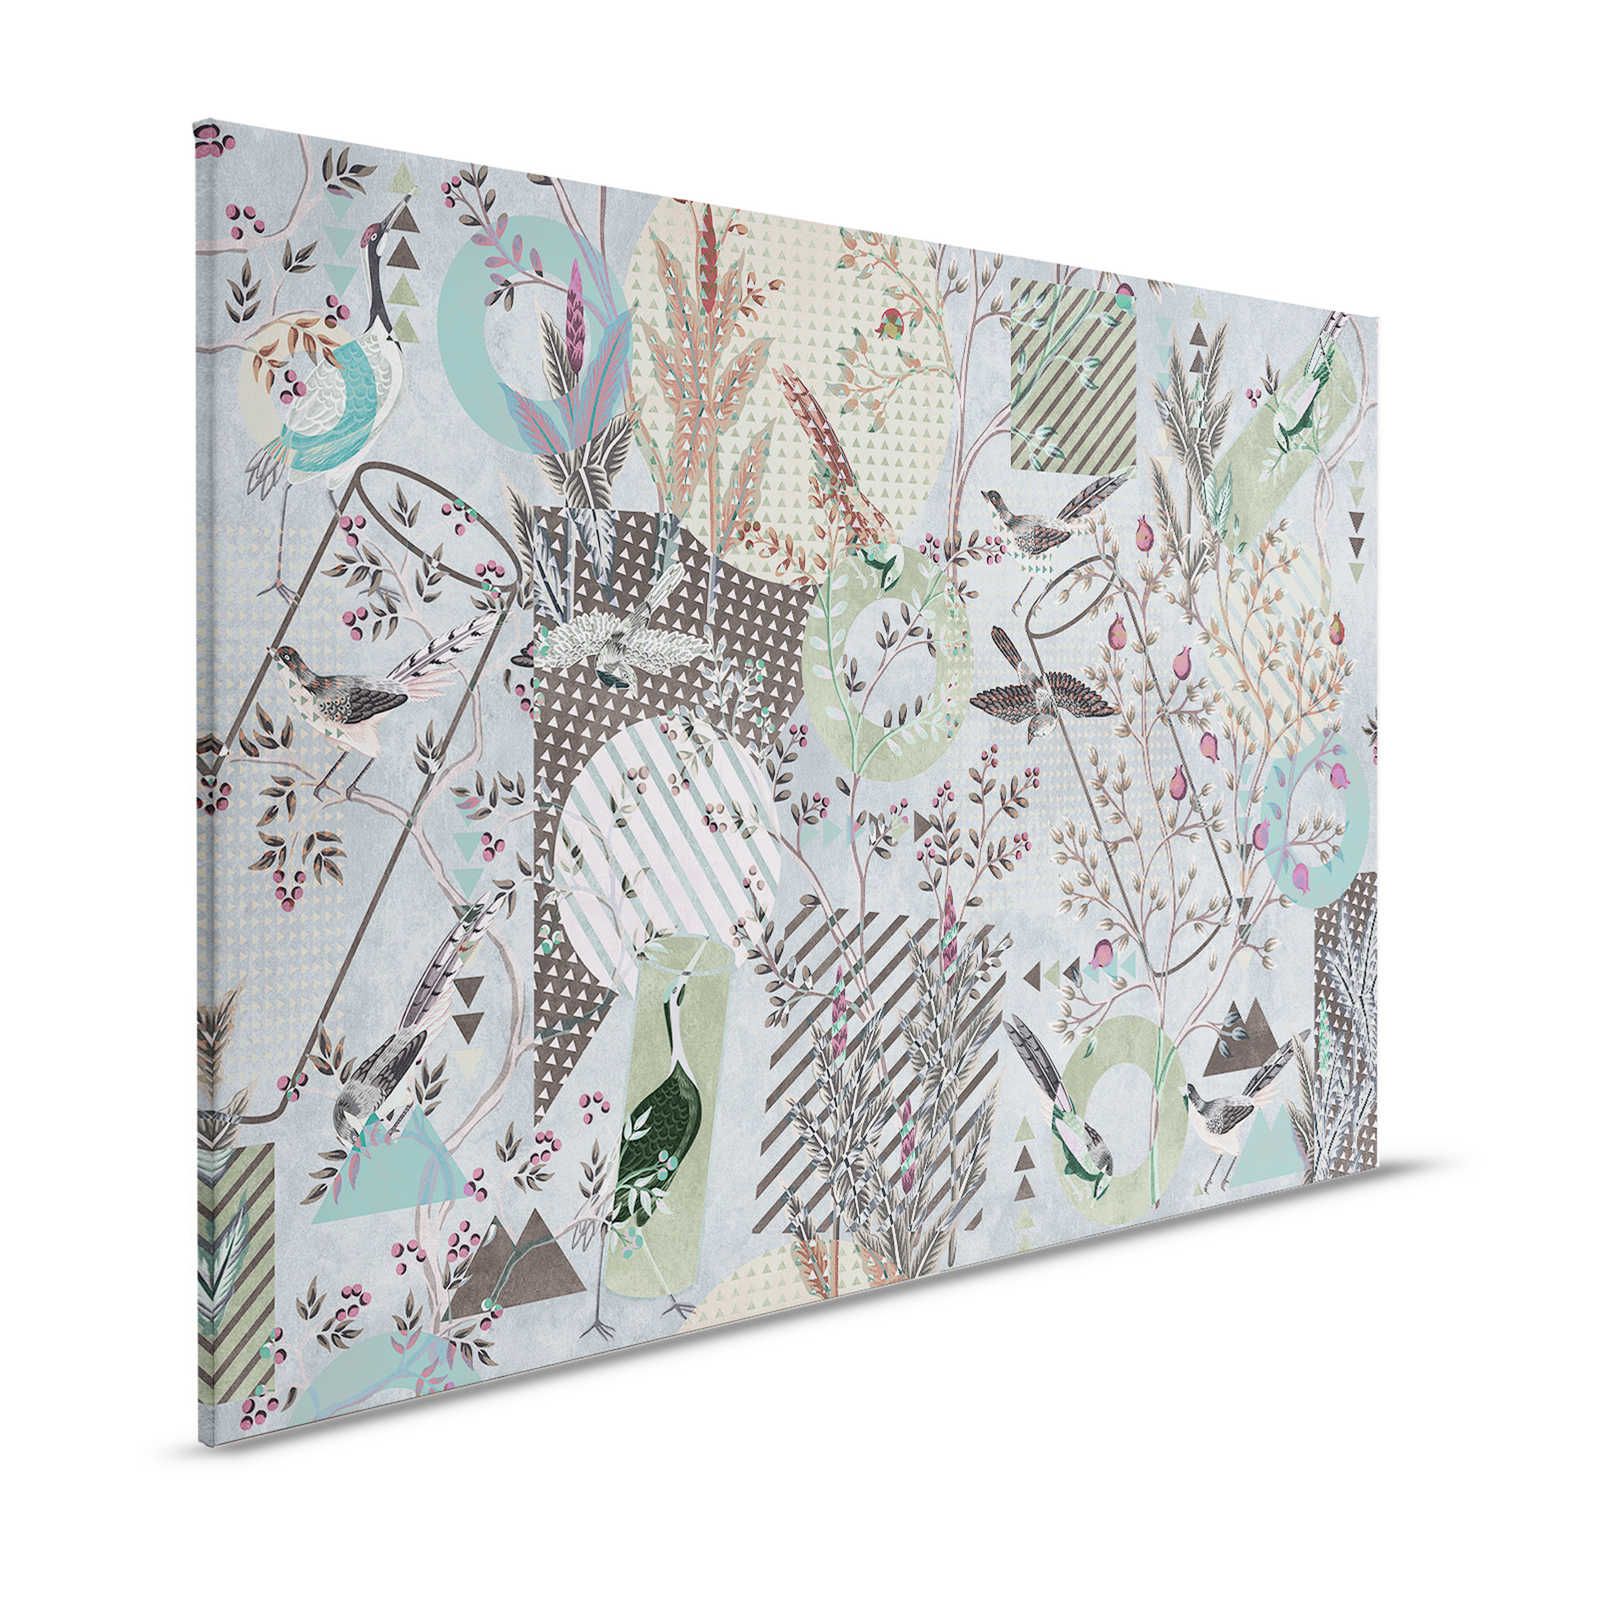 Birds Playground 2 - Quadro su tela con uccelli Collage e motivi misti - 1,20 m x 0,80 m
